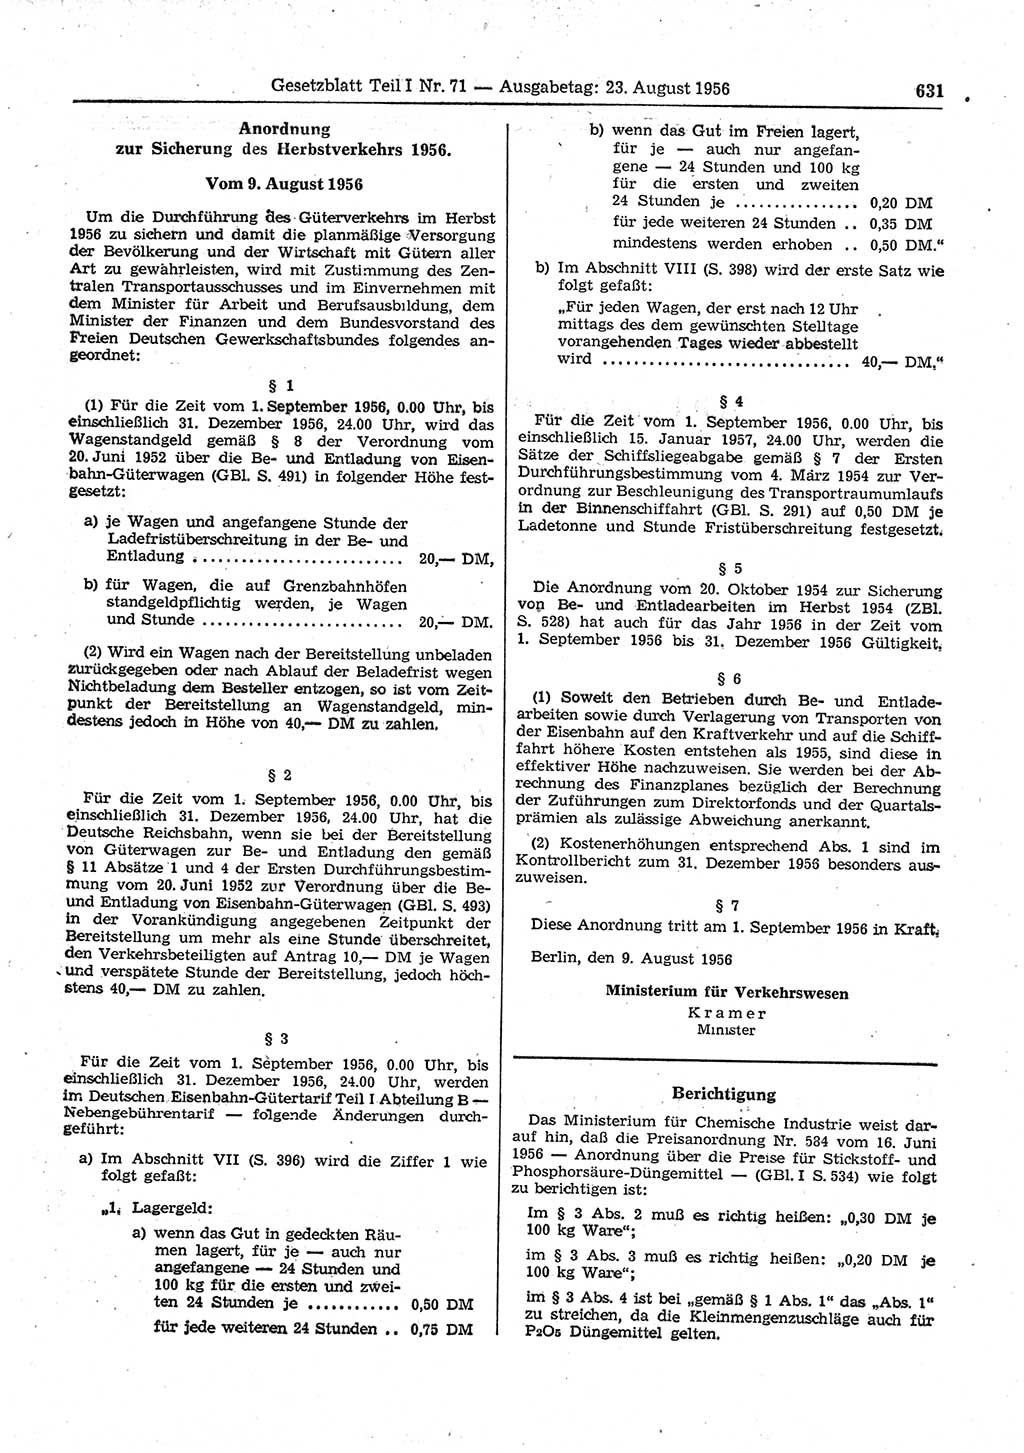 Gesetzblatt (GBl.) der Deutschen Demokratischen Republik (DDR) Teil Ⅰ 1956, Seite 631 (GBl. DDR Ⅰ 1956, S. 631)